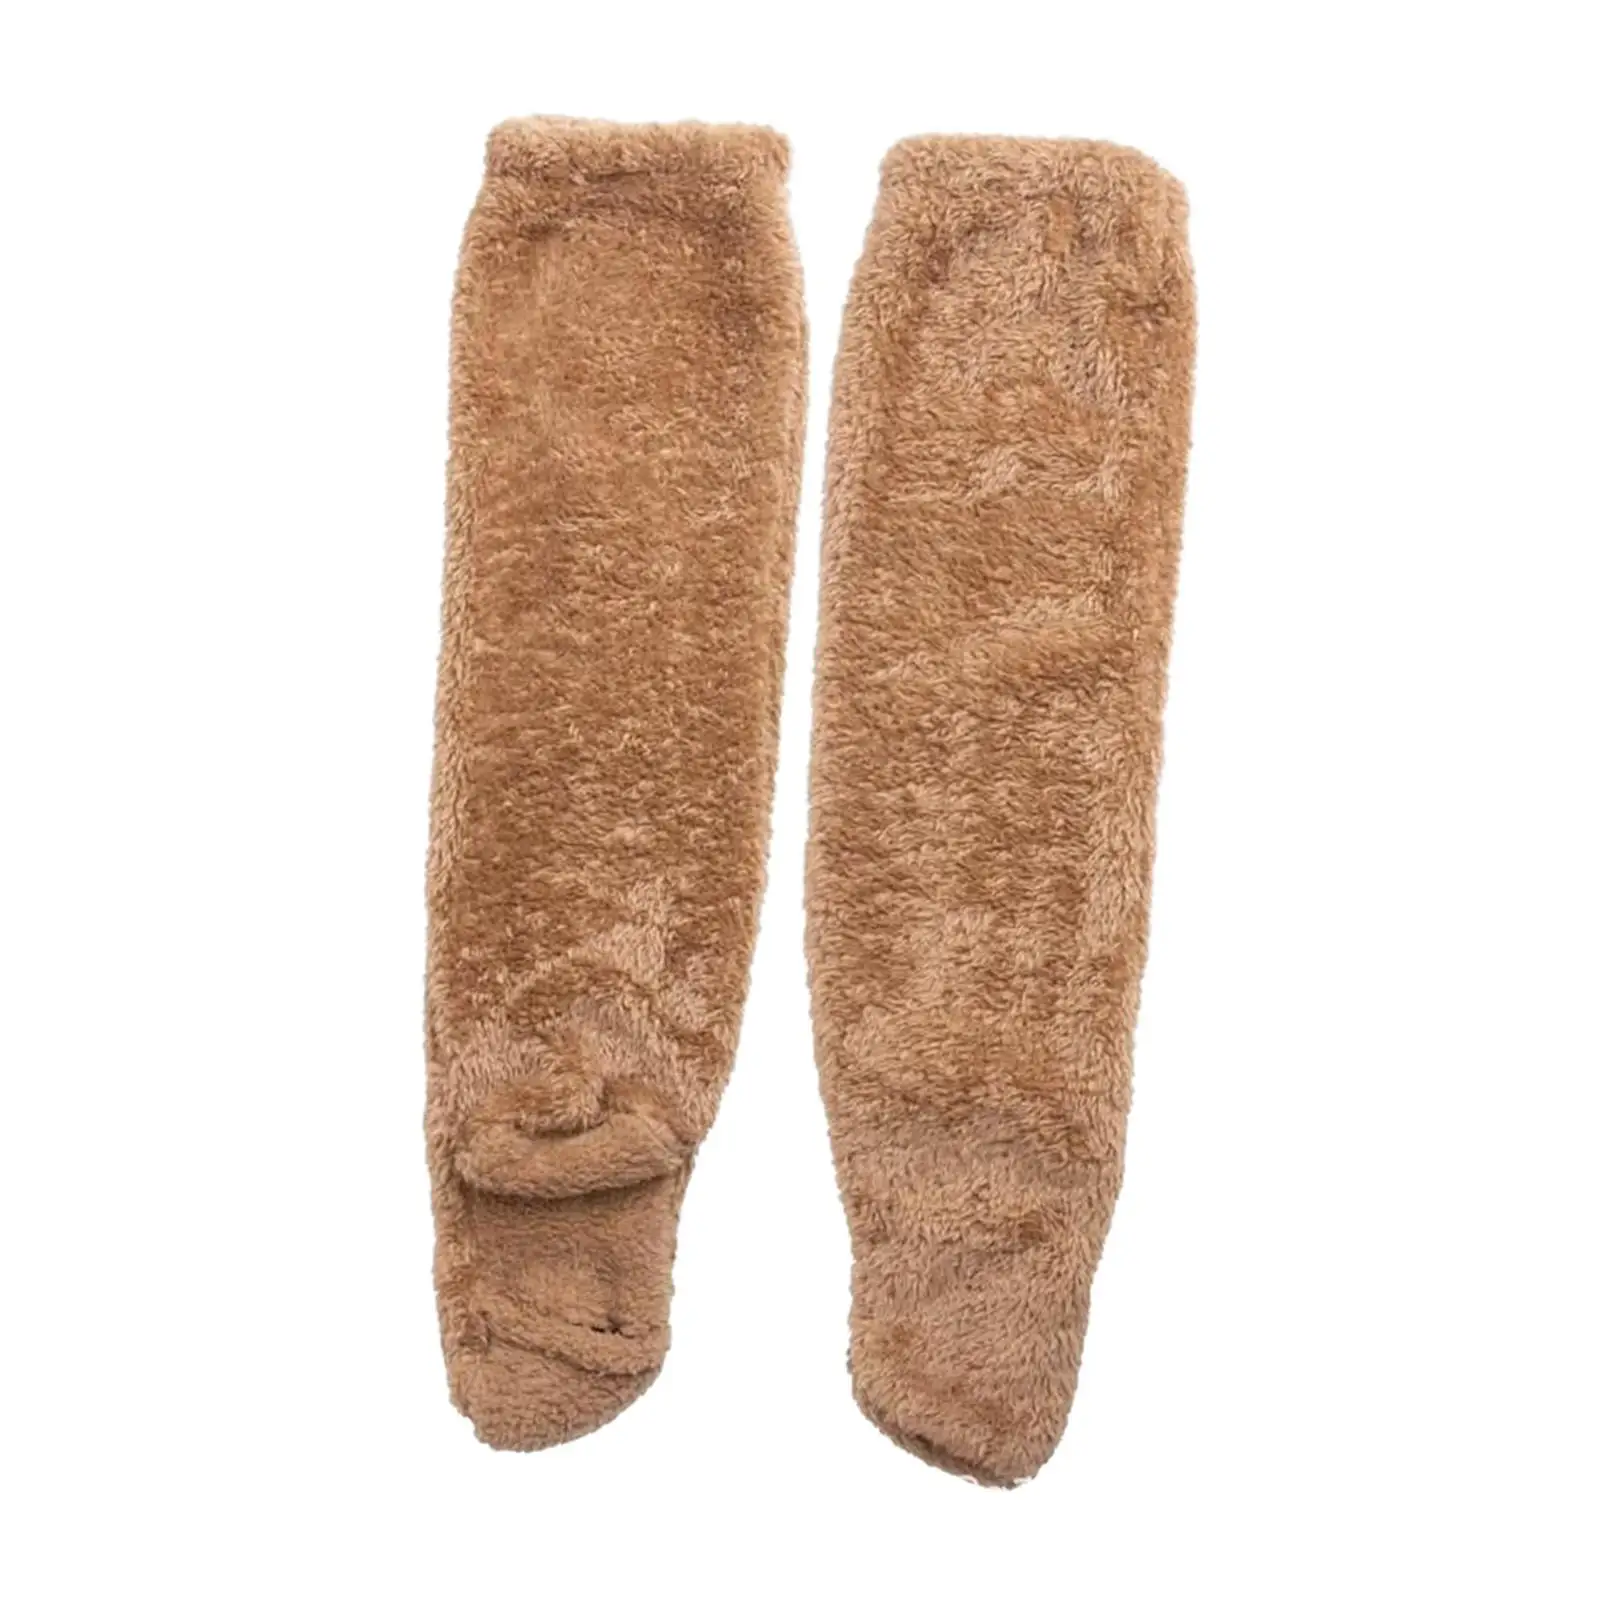 Thigh High Socks over Knee High Boot Stockings Plush Leg Warmers Slipper Stockings for Home Living Room Bedroom Office Winter